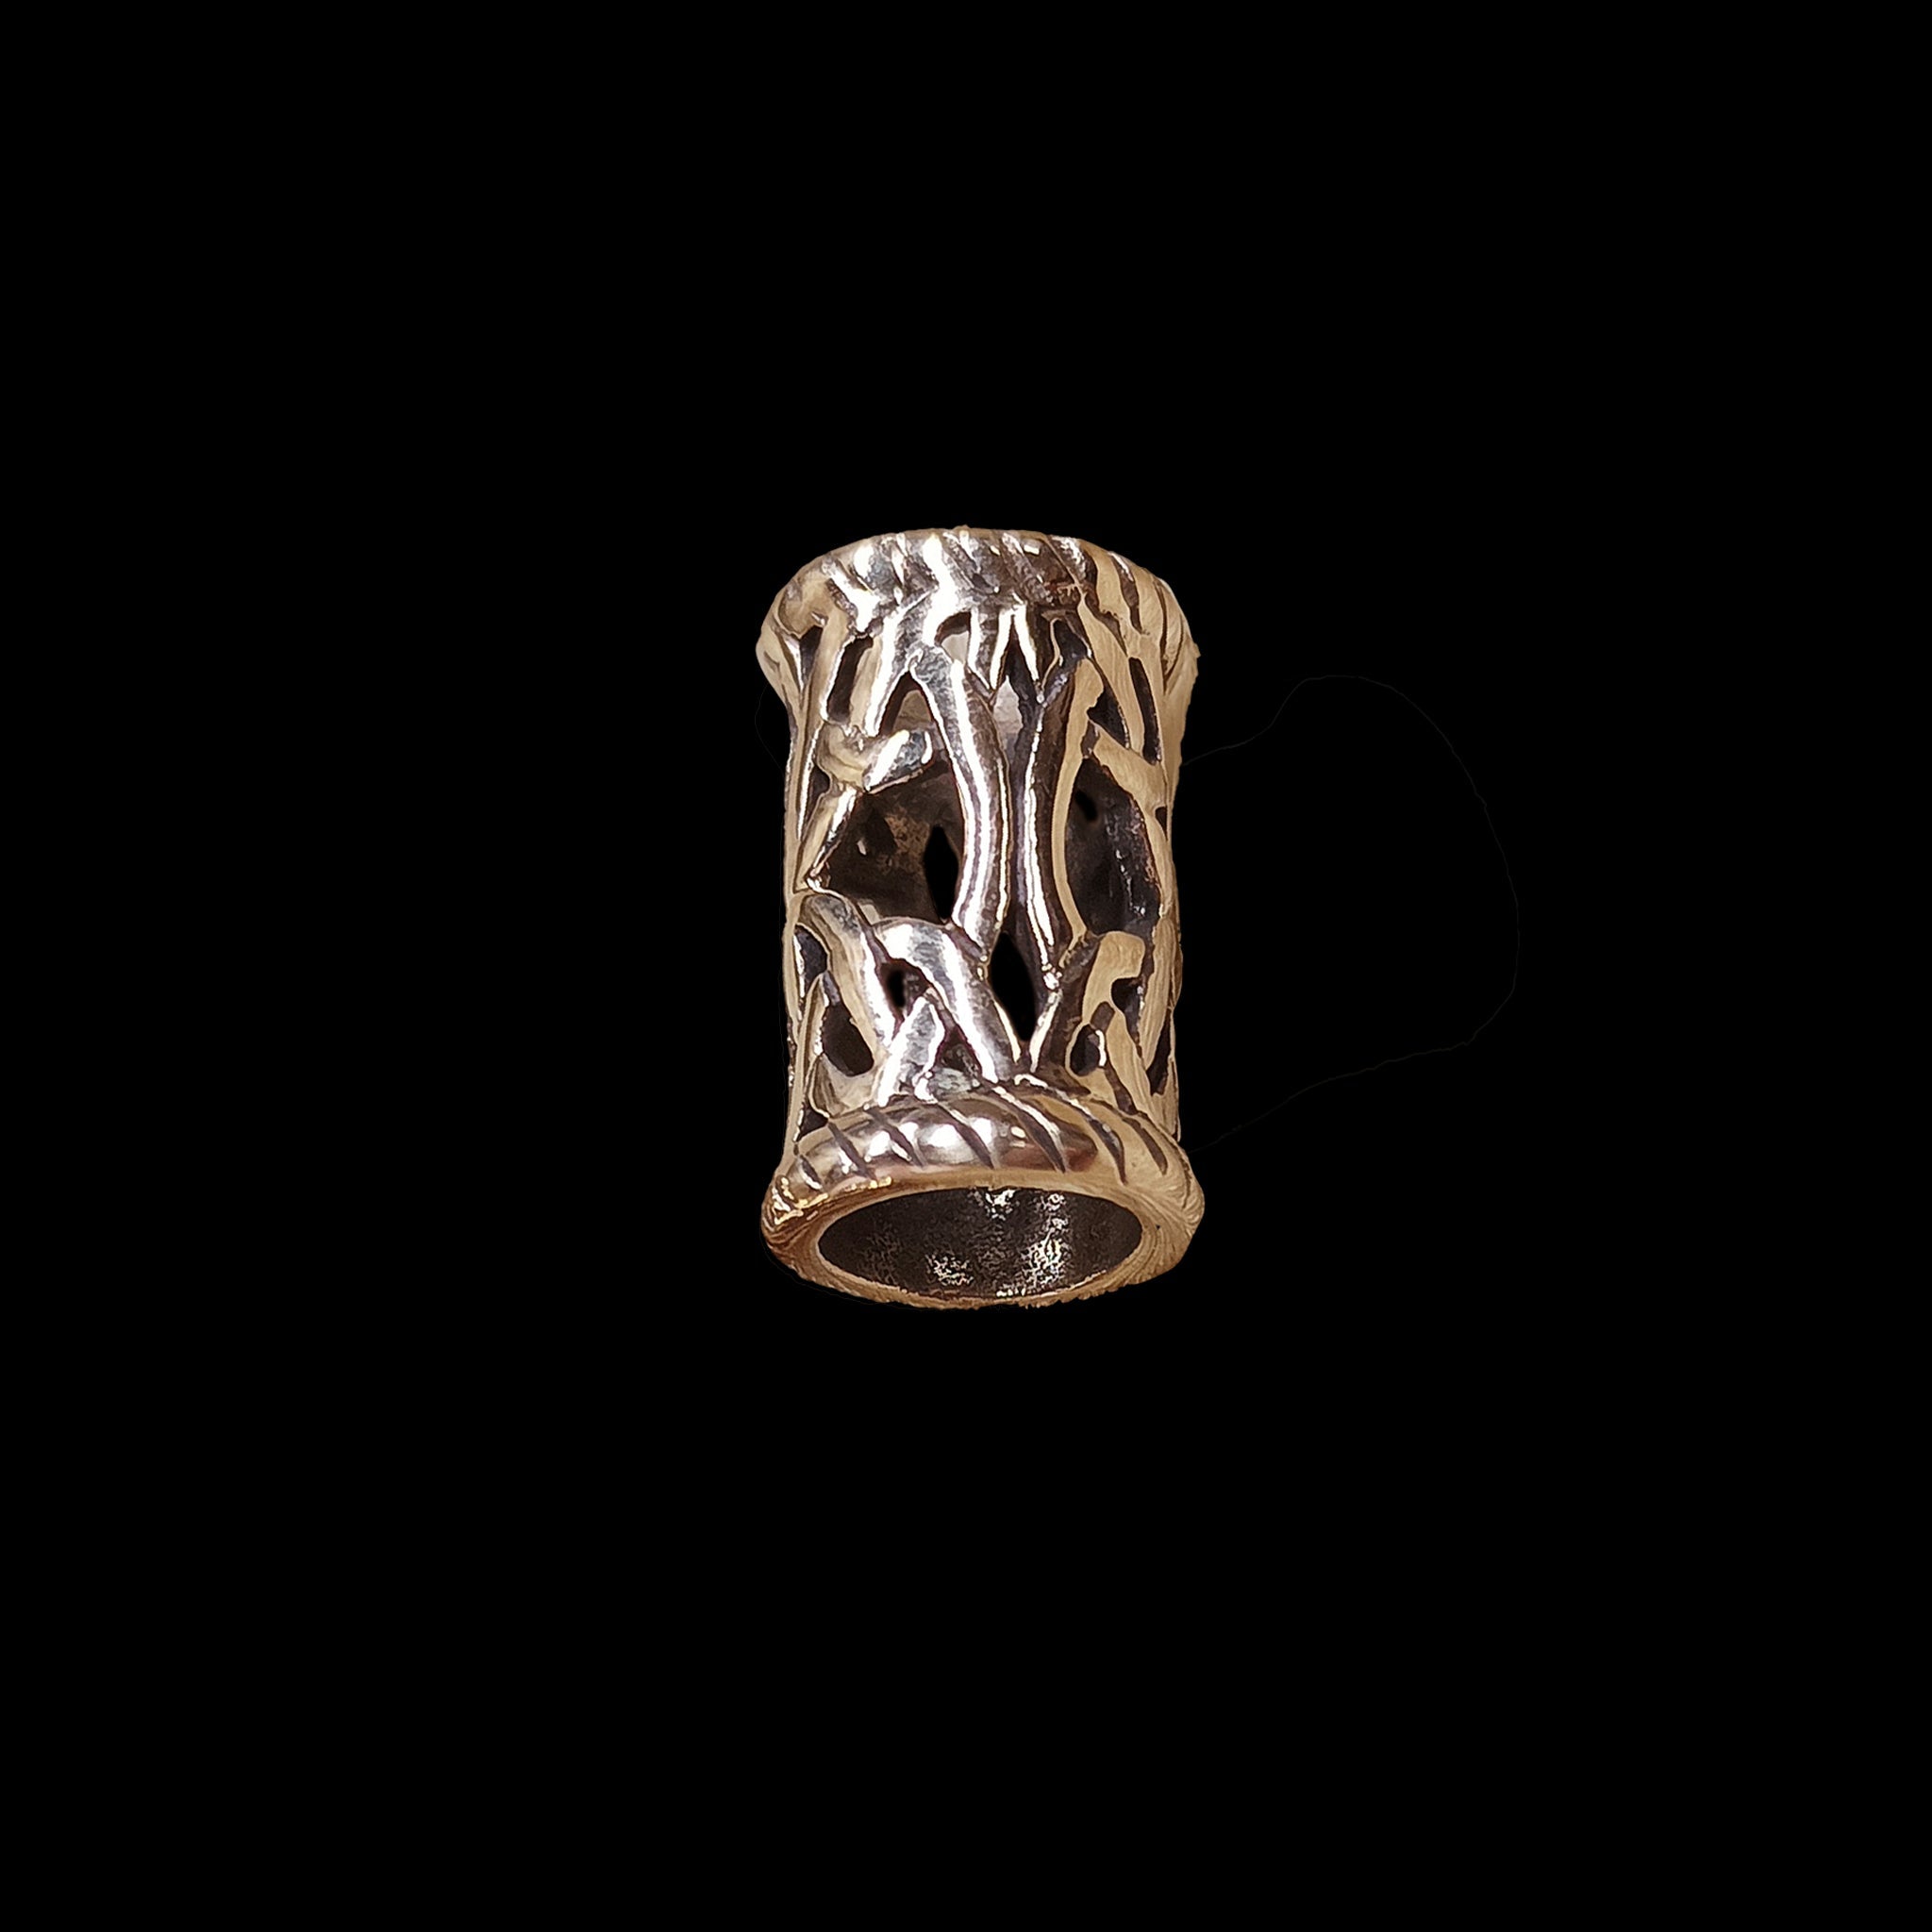 Medium Openwork Viking Beard Ring in Bronze